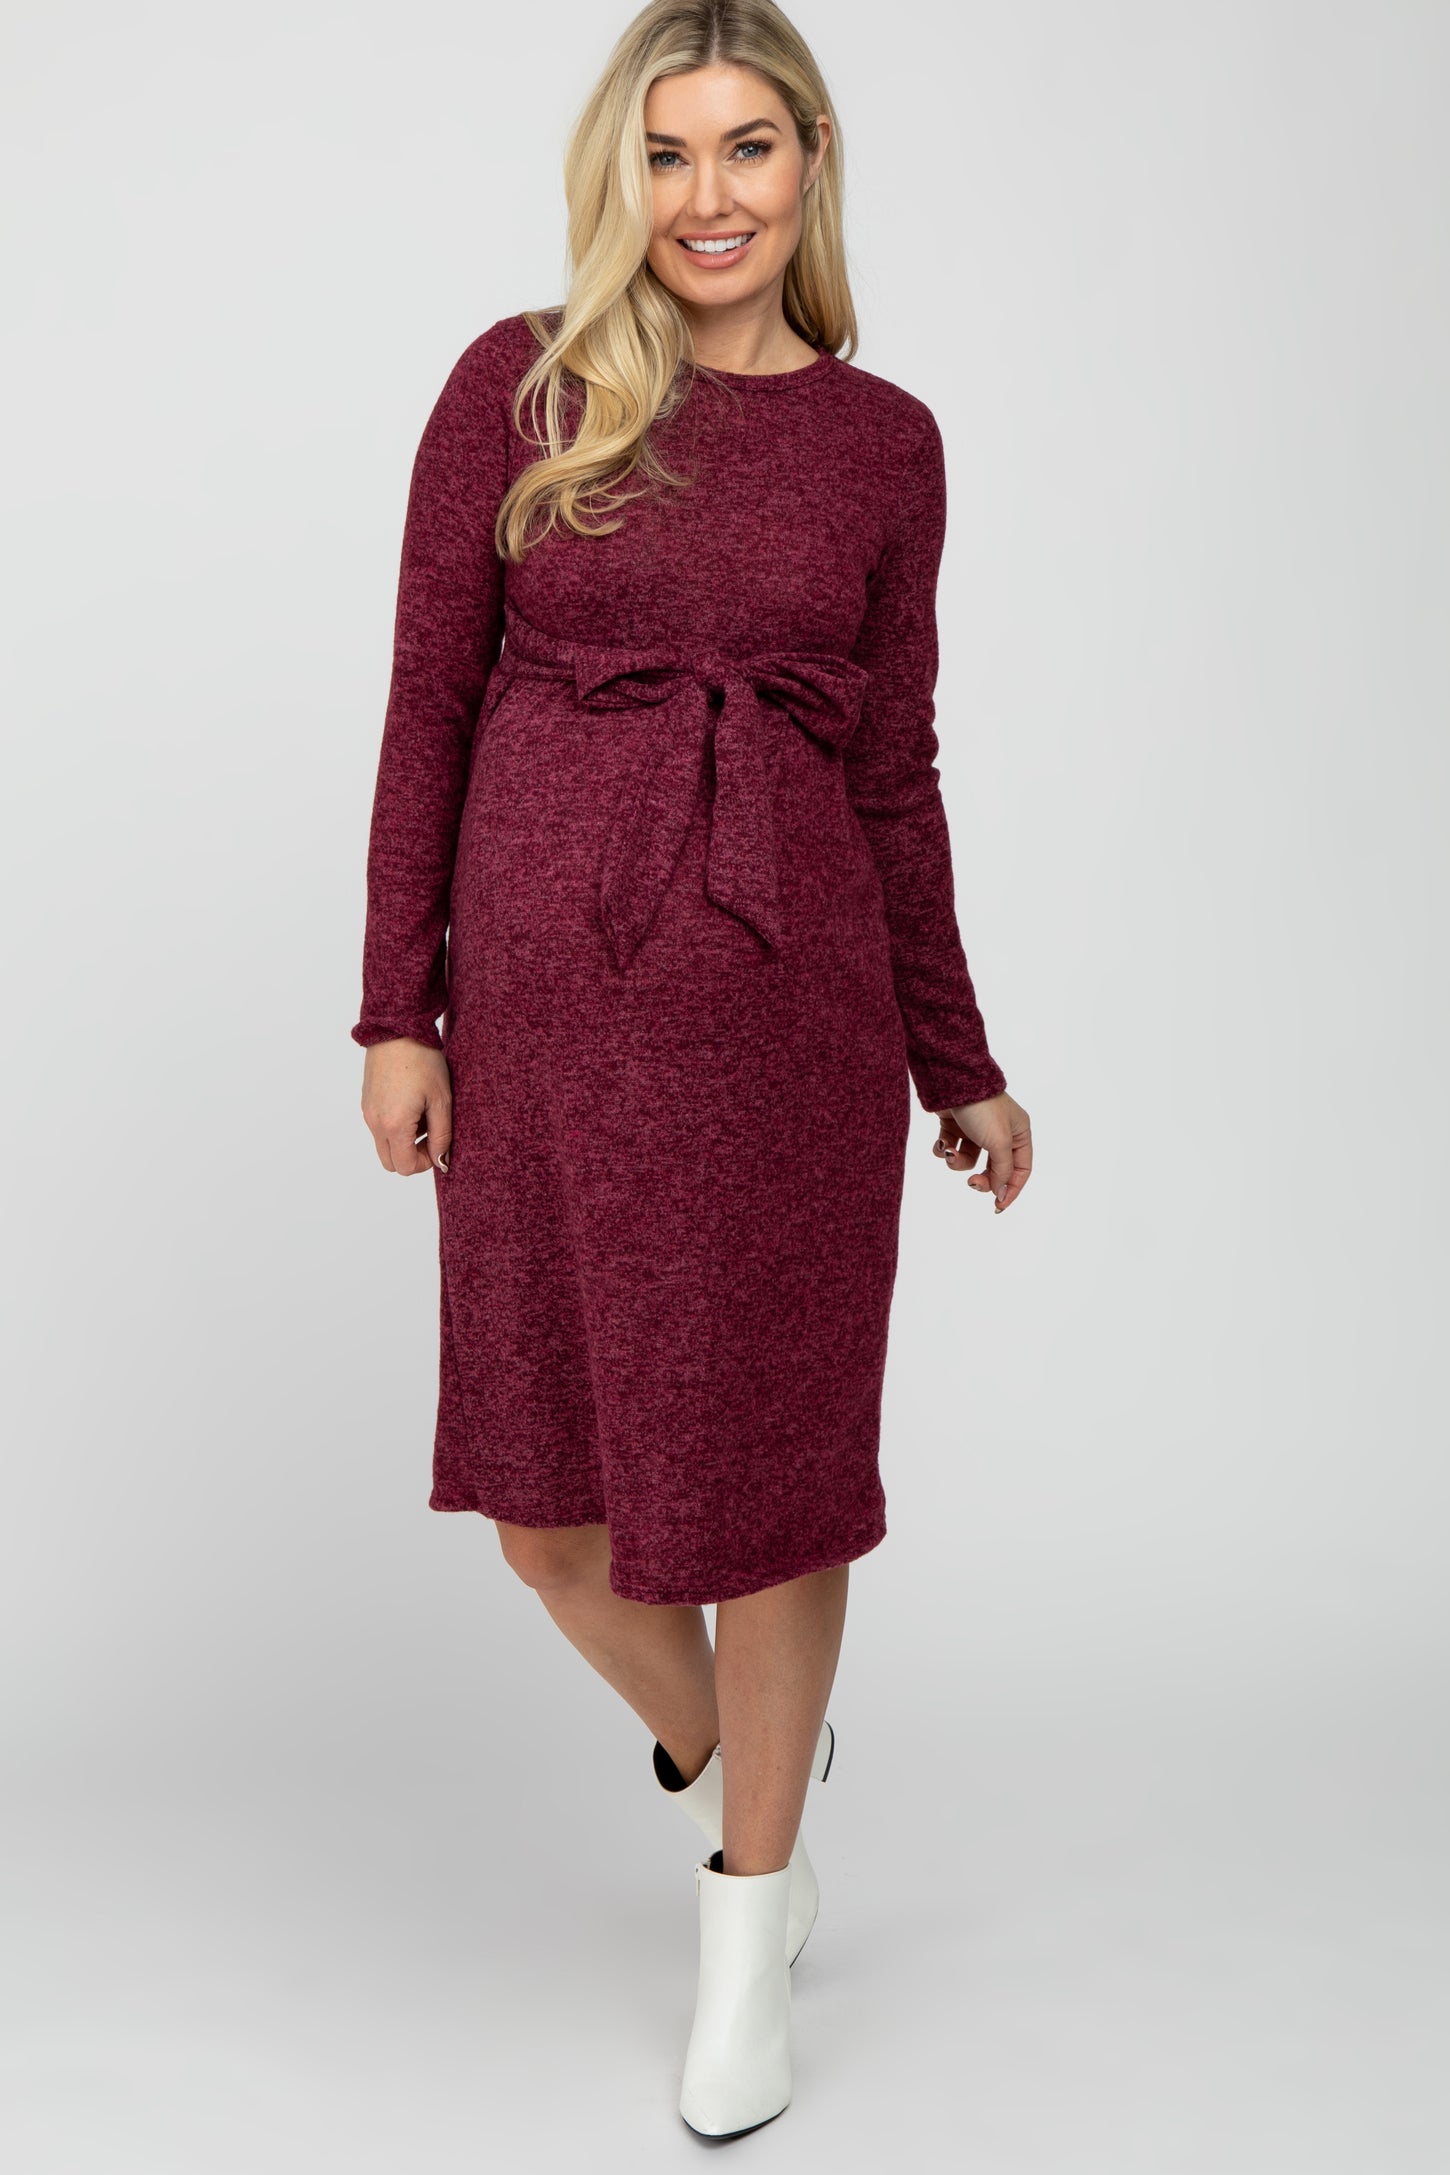 Burgundy Brushed Heathered Long Sleeve Maternity Dress